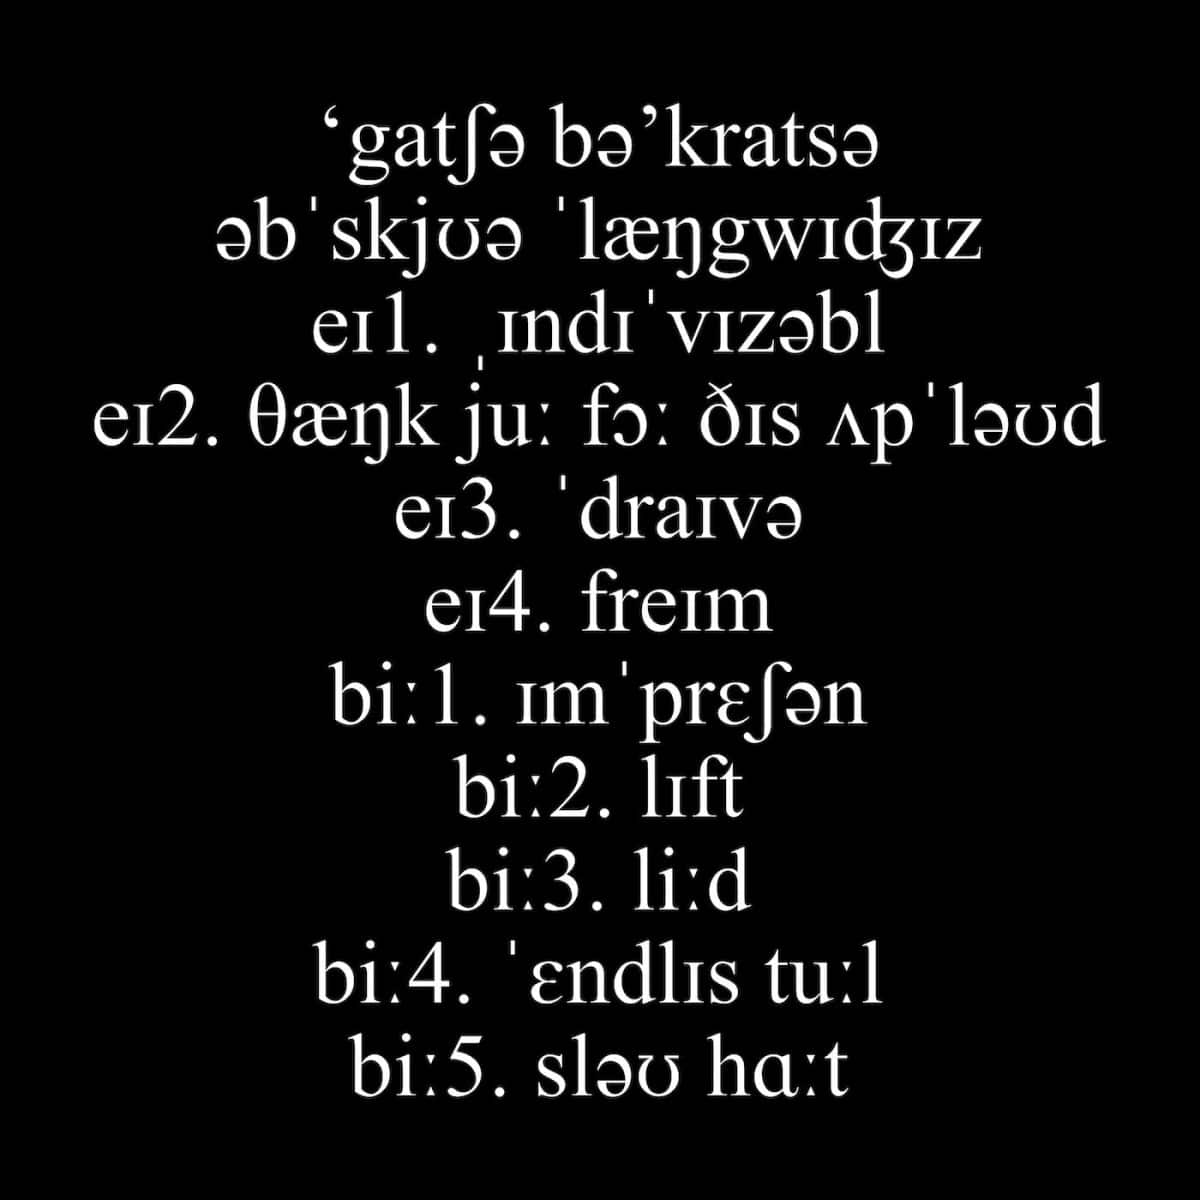 Gacha Bakradze - Obscure Languages - LPS26 - LAPSUS